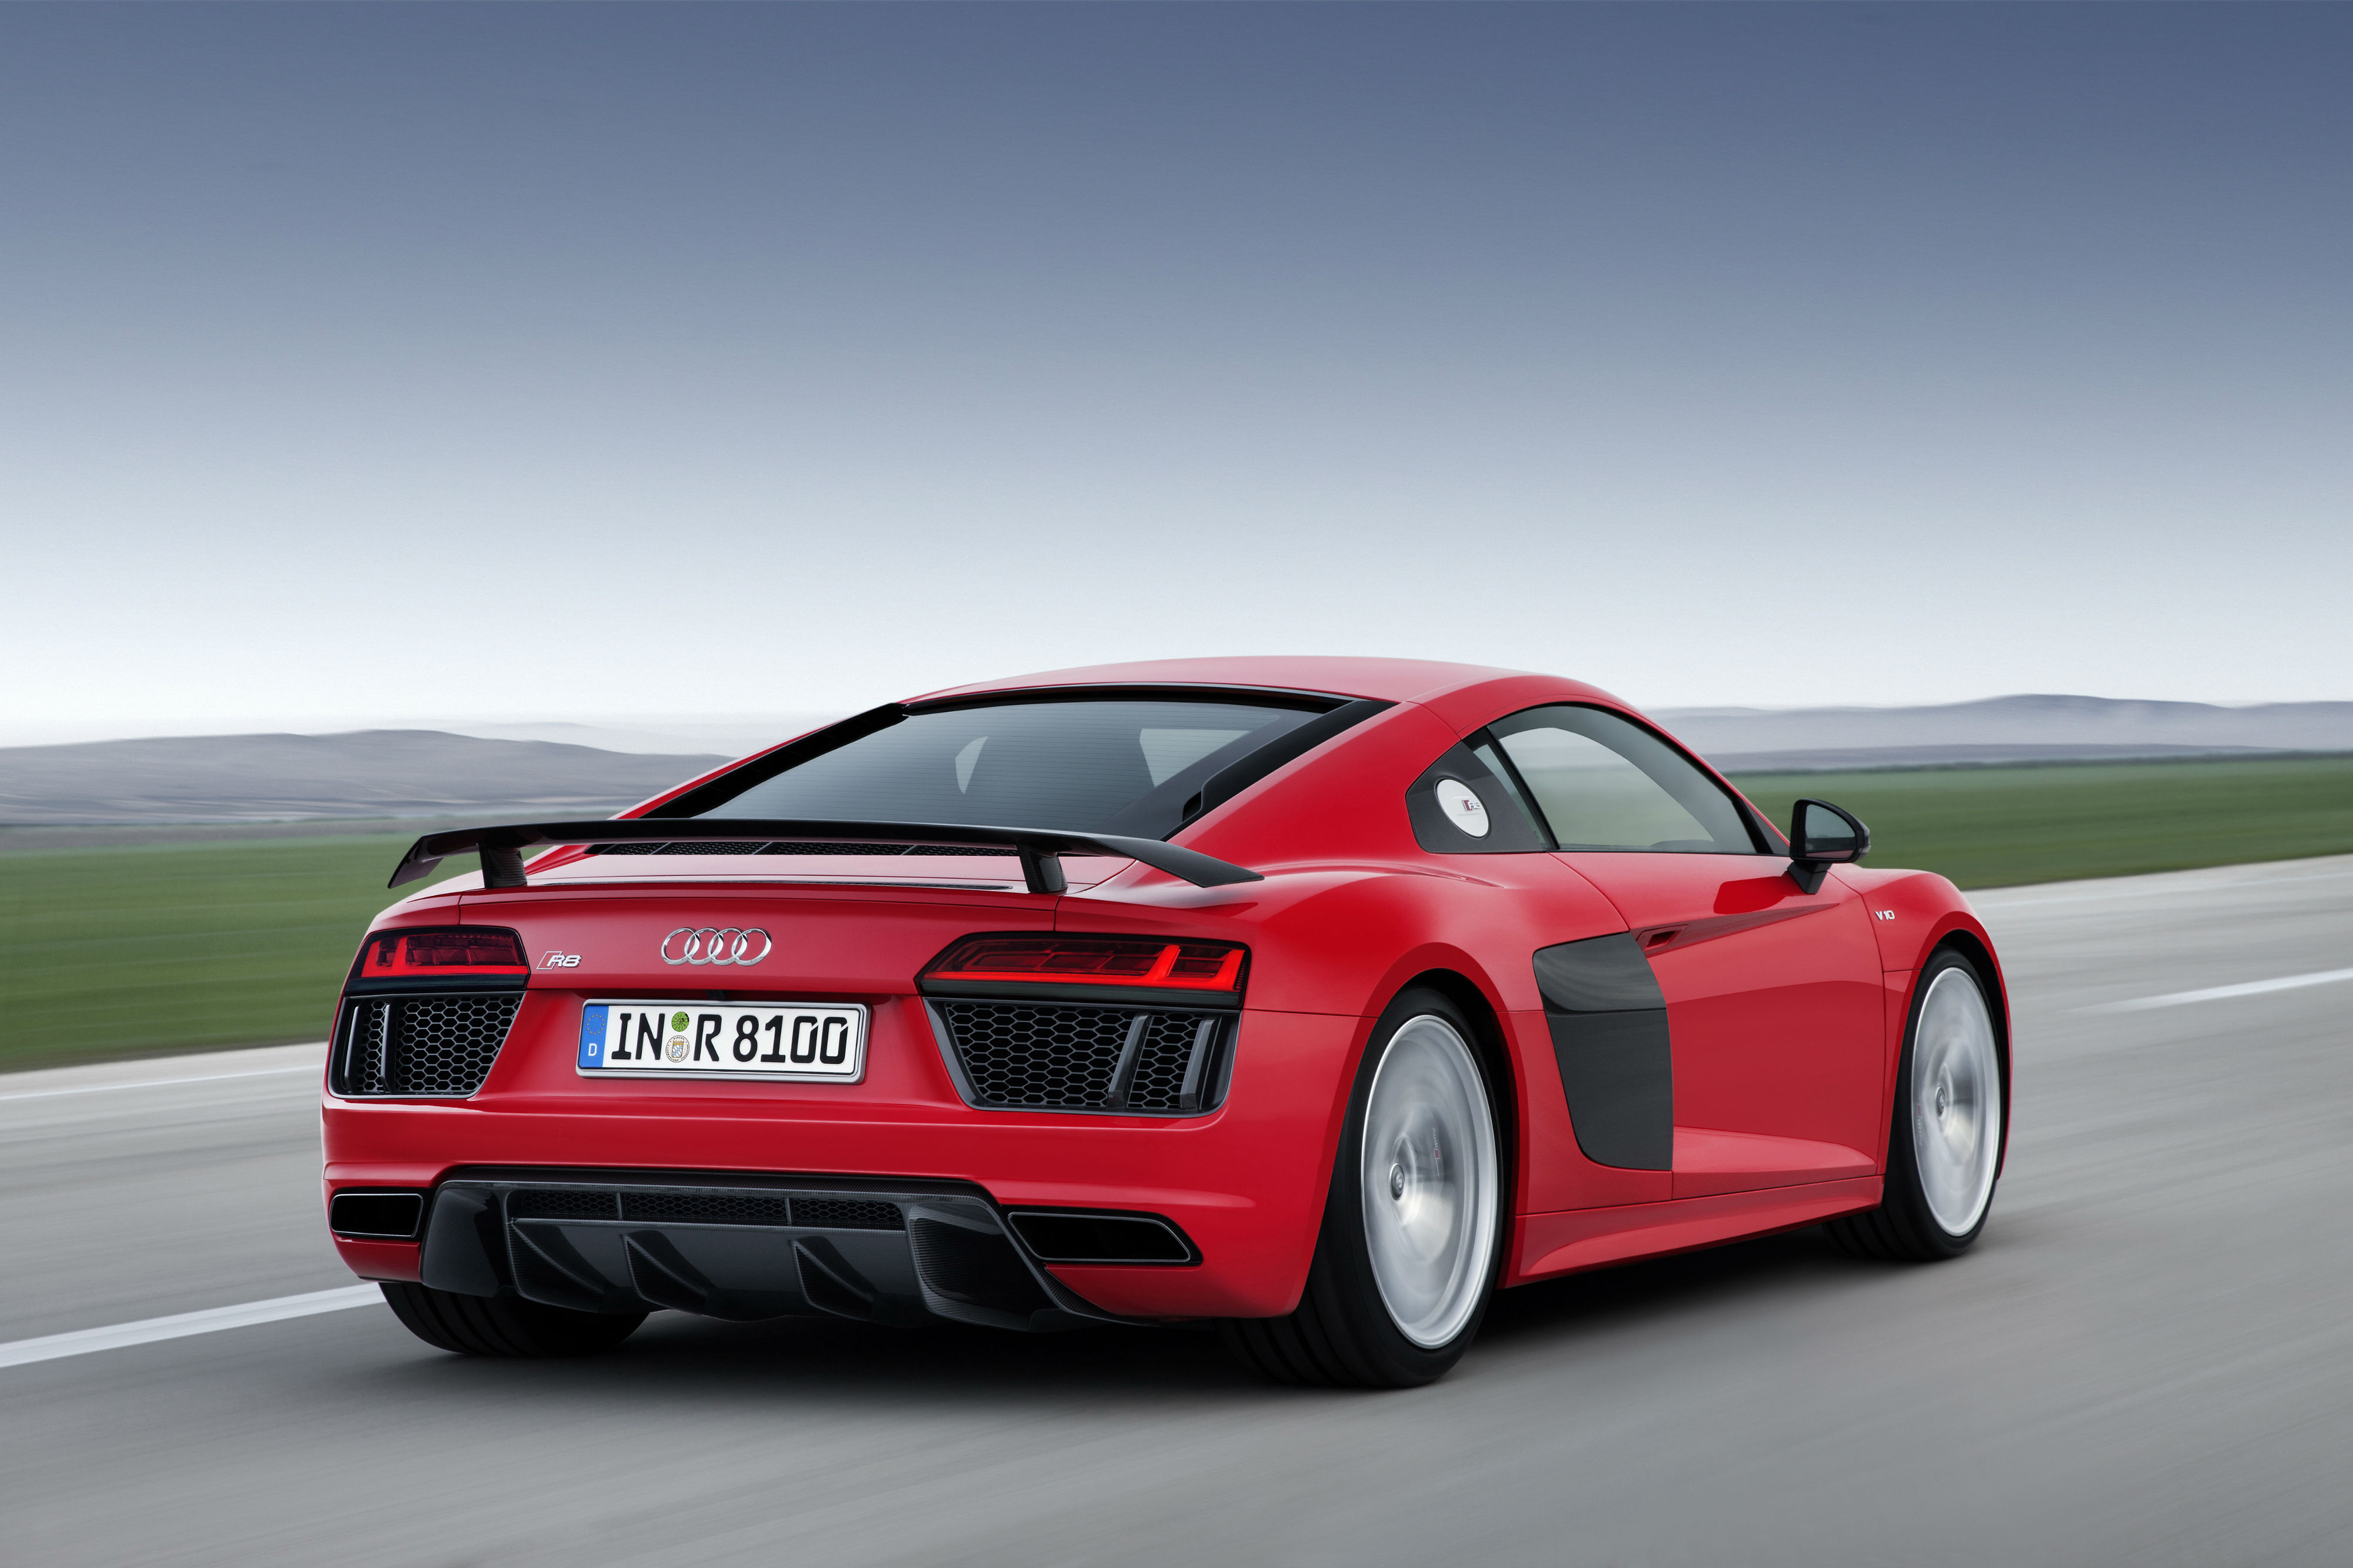 Audi R8 V10 Plus rear view